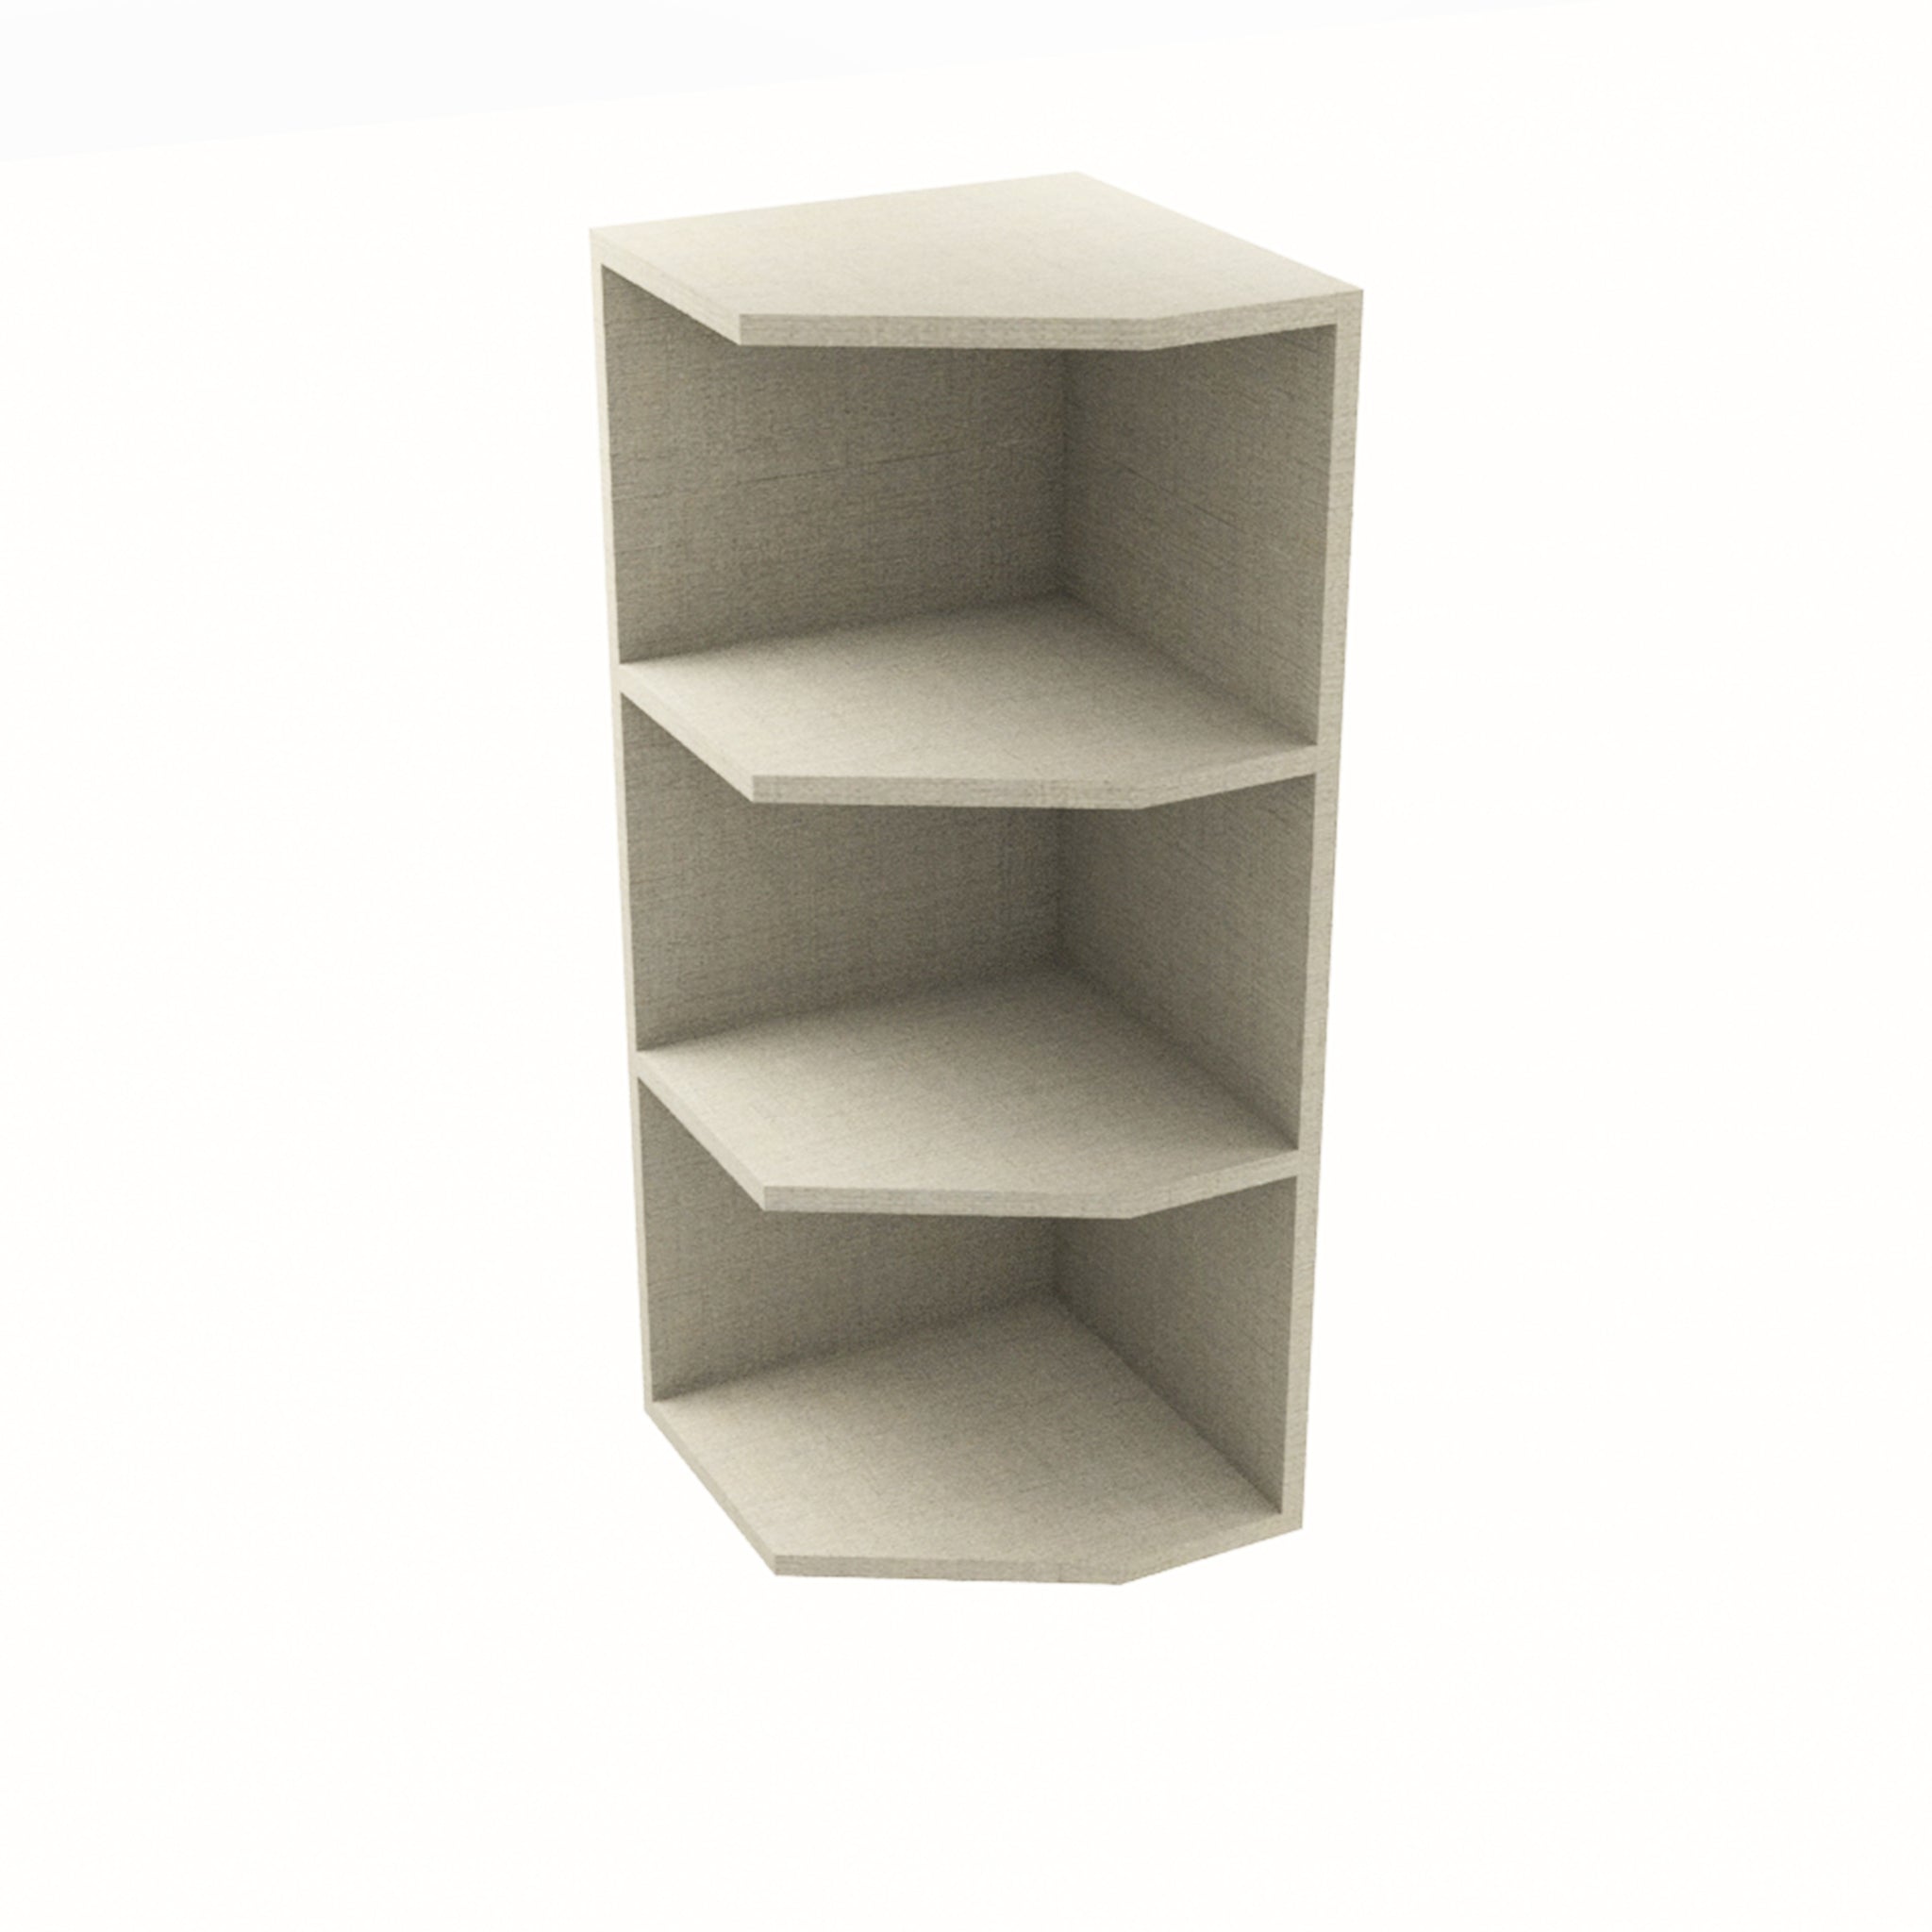 RTA - Fabric Grey - End Wall Shelf Base Cabinets | 12"W x 36"H x 12"D